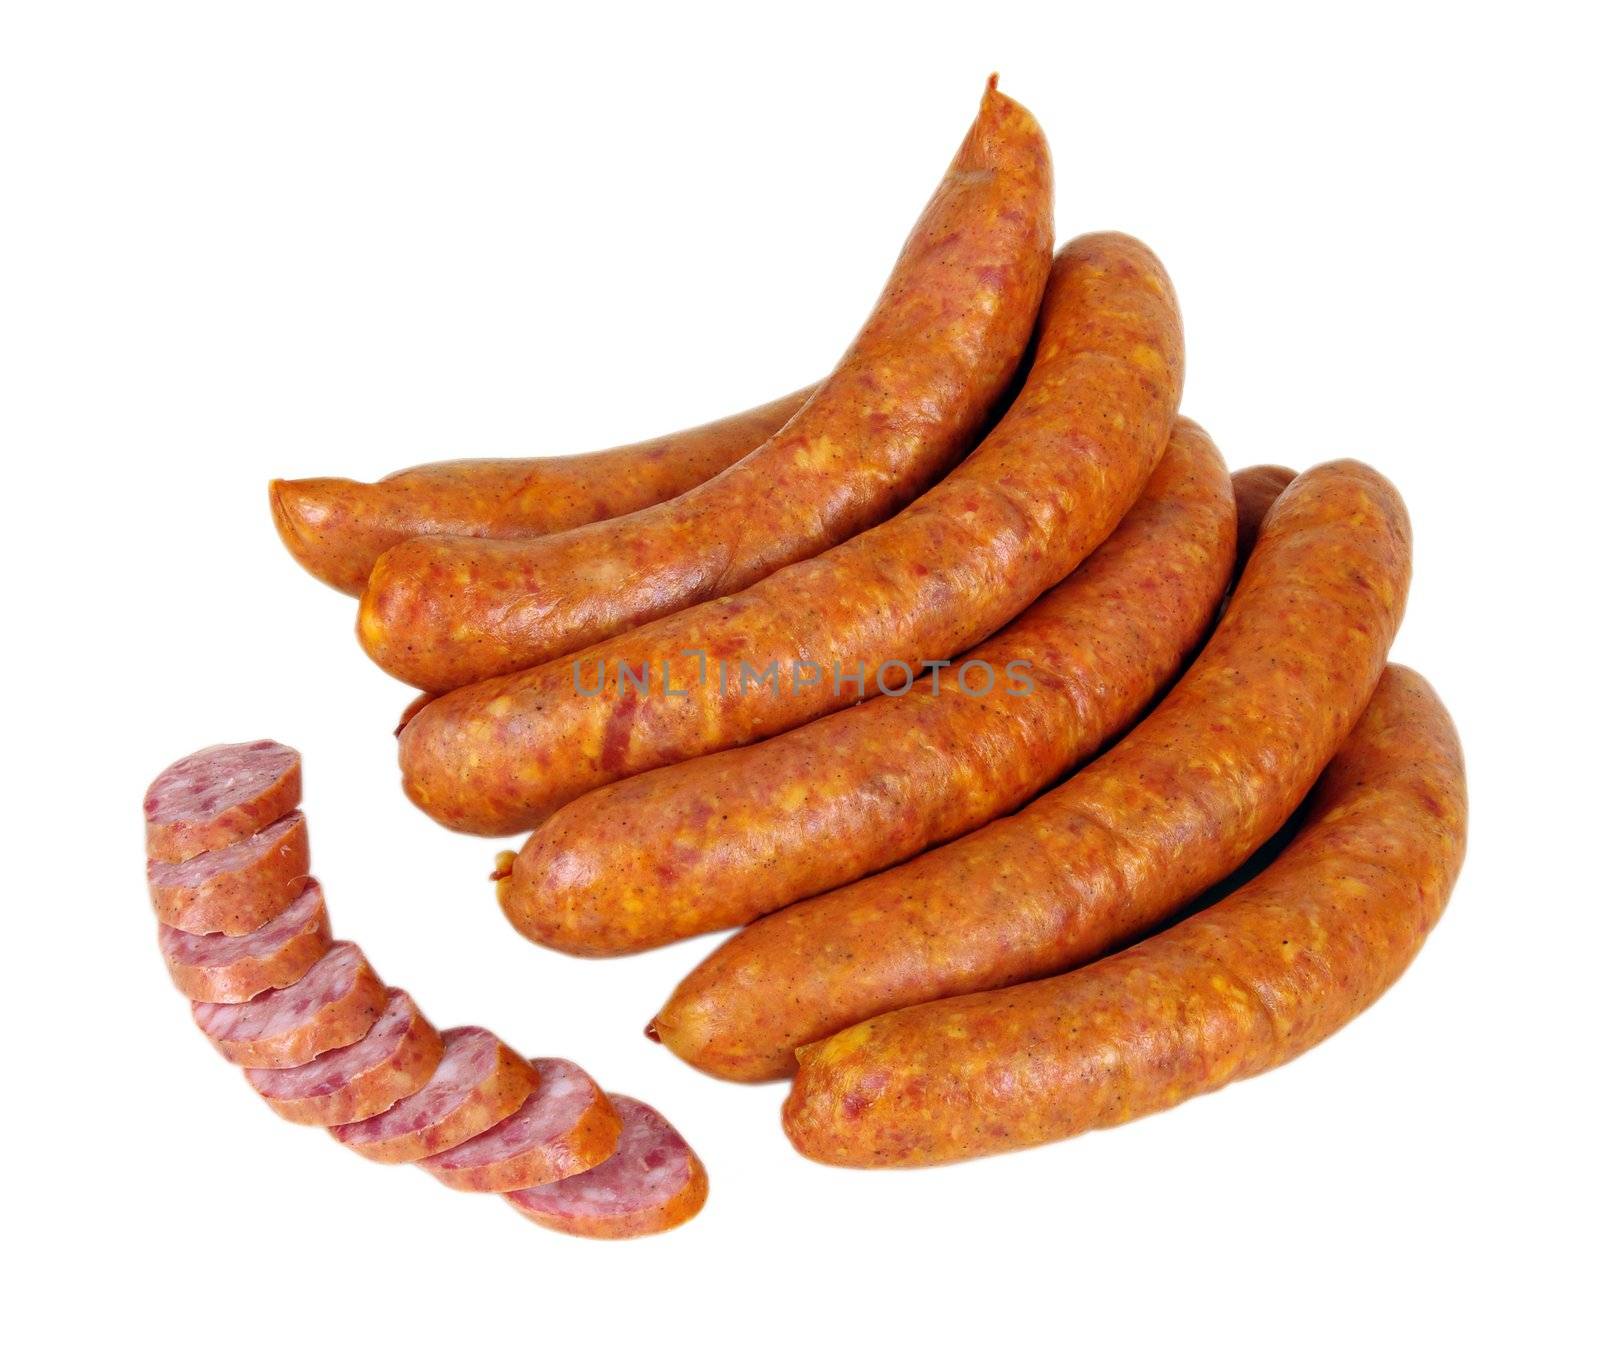 sausage by sibrikov